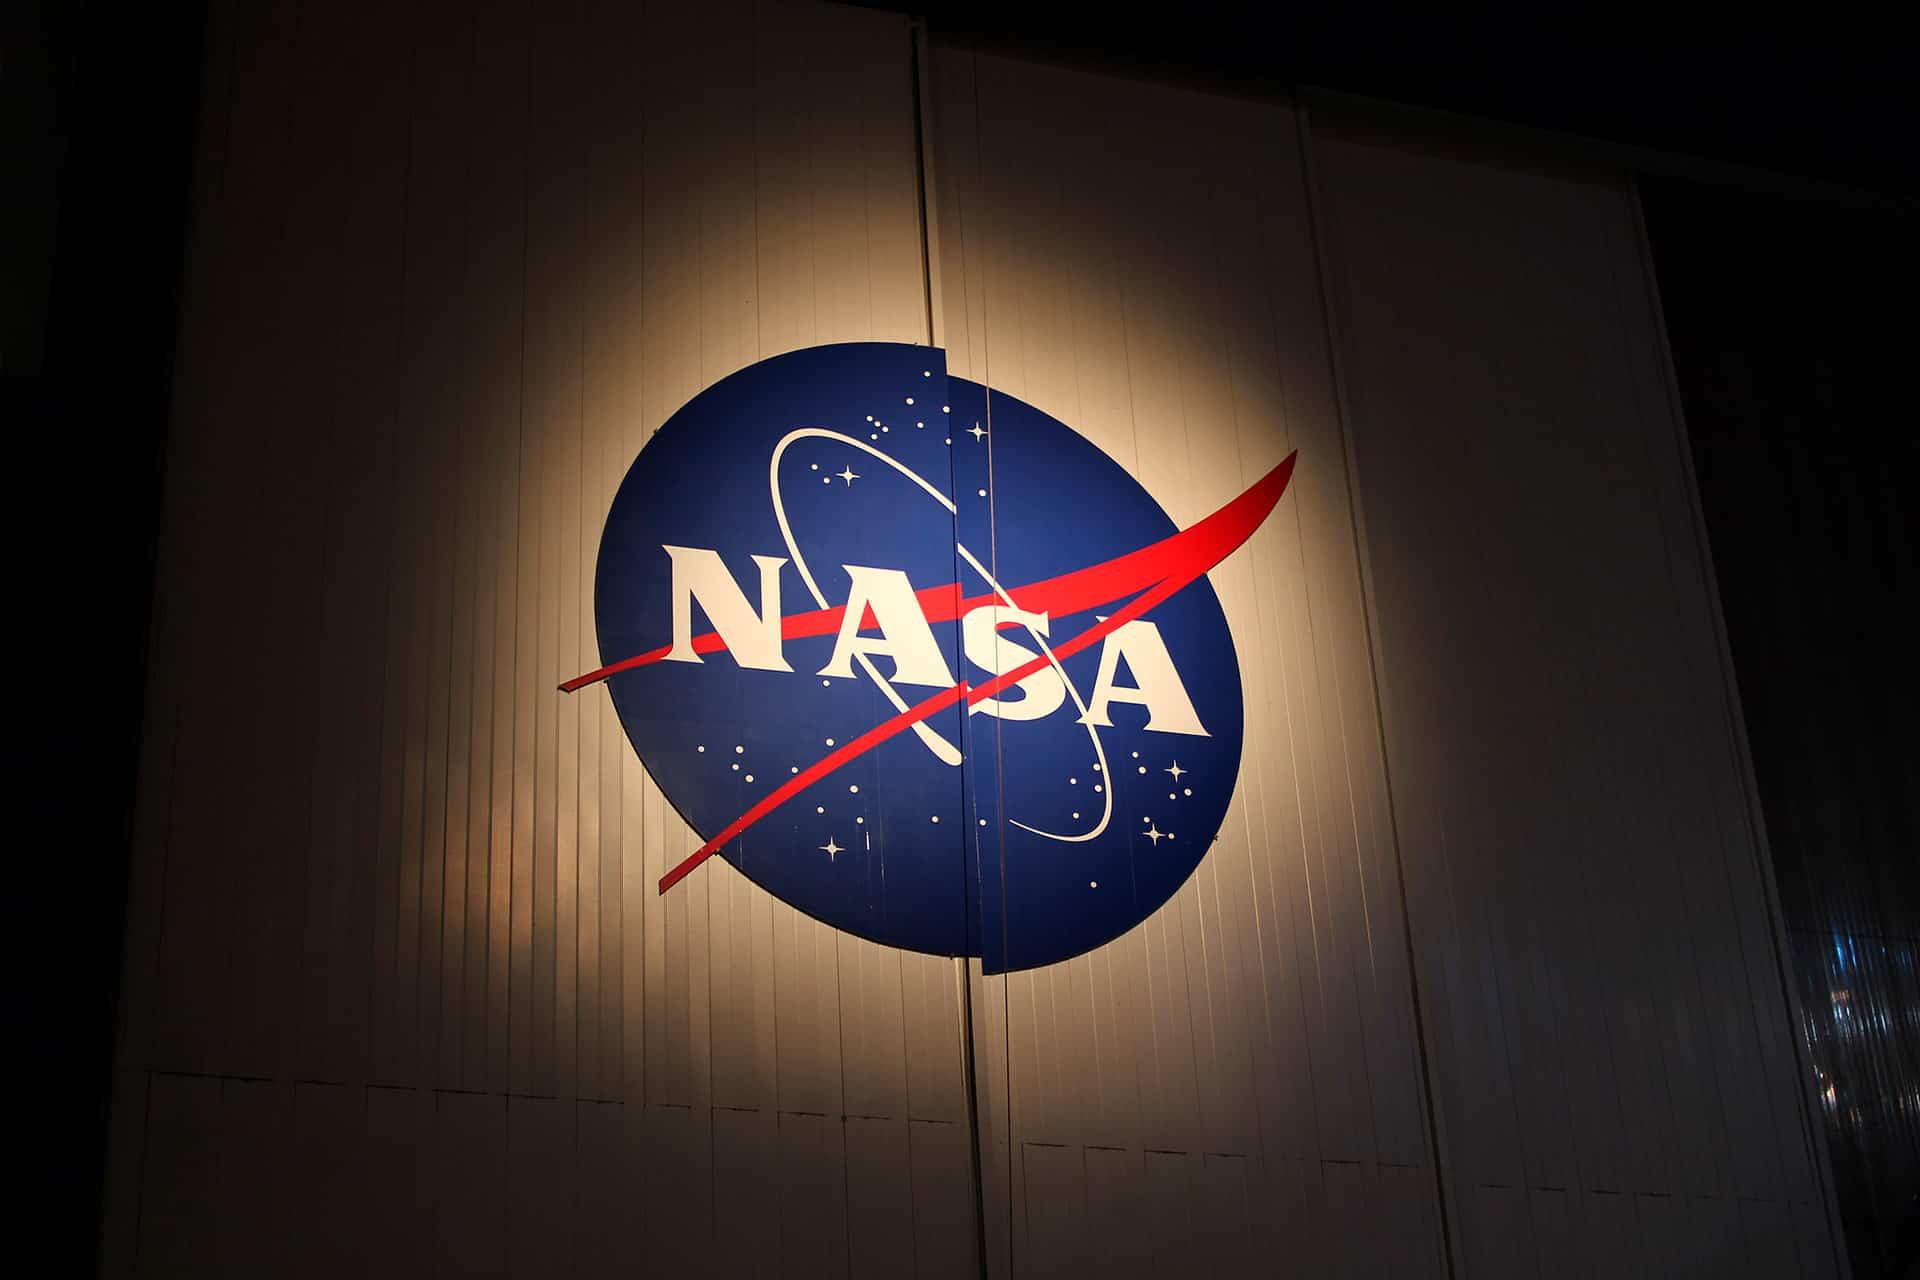 لوگوی ناسا روی ساختمان در شب